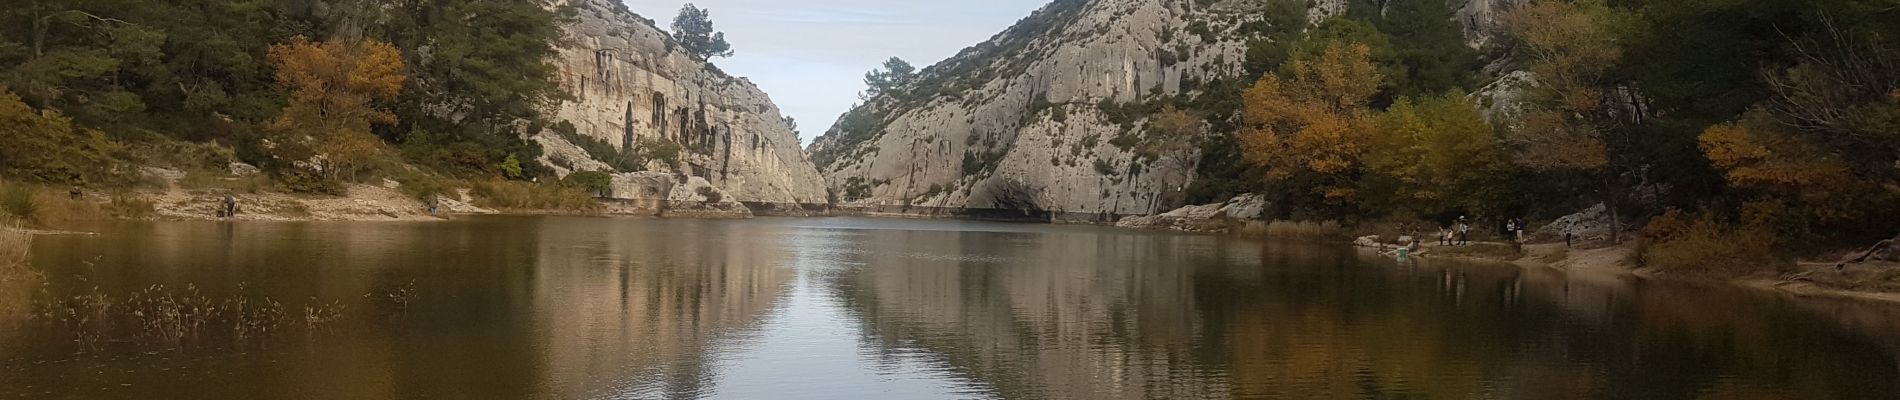 Randonnée Marche Saint-Rémy-de-Provence - st Rémy lac peiroou rocher troués massif des caumes - Photo